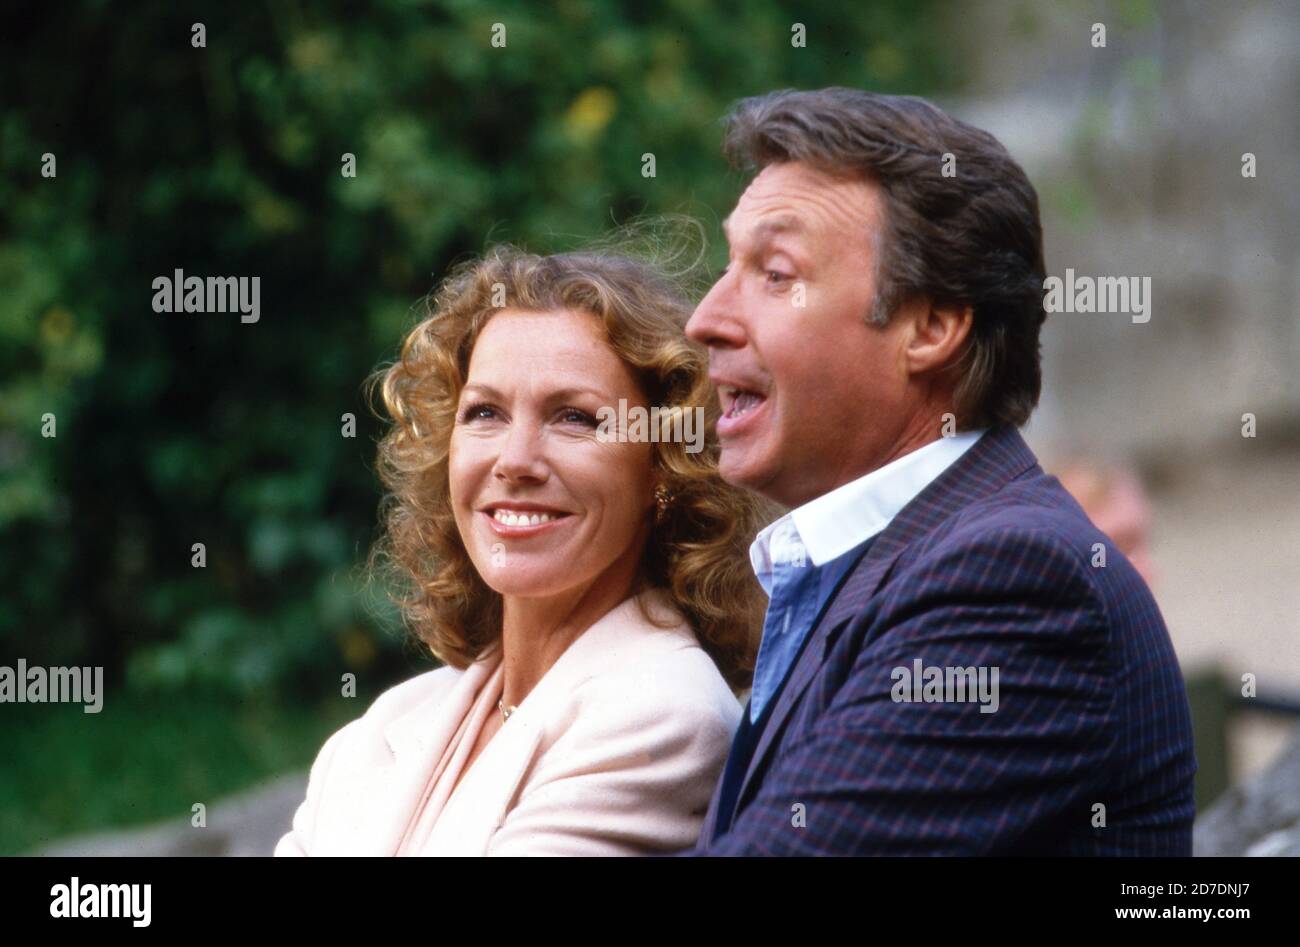 Peter Alexander, österreichischer Sänger und Schauspieler, besucht mit Schauspielerin Gaby Dohm den Tierpark Hagenbeck in Hamburg, Deutschland 1990. Stockfoto